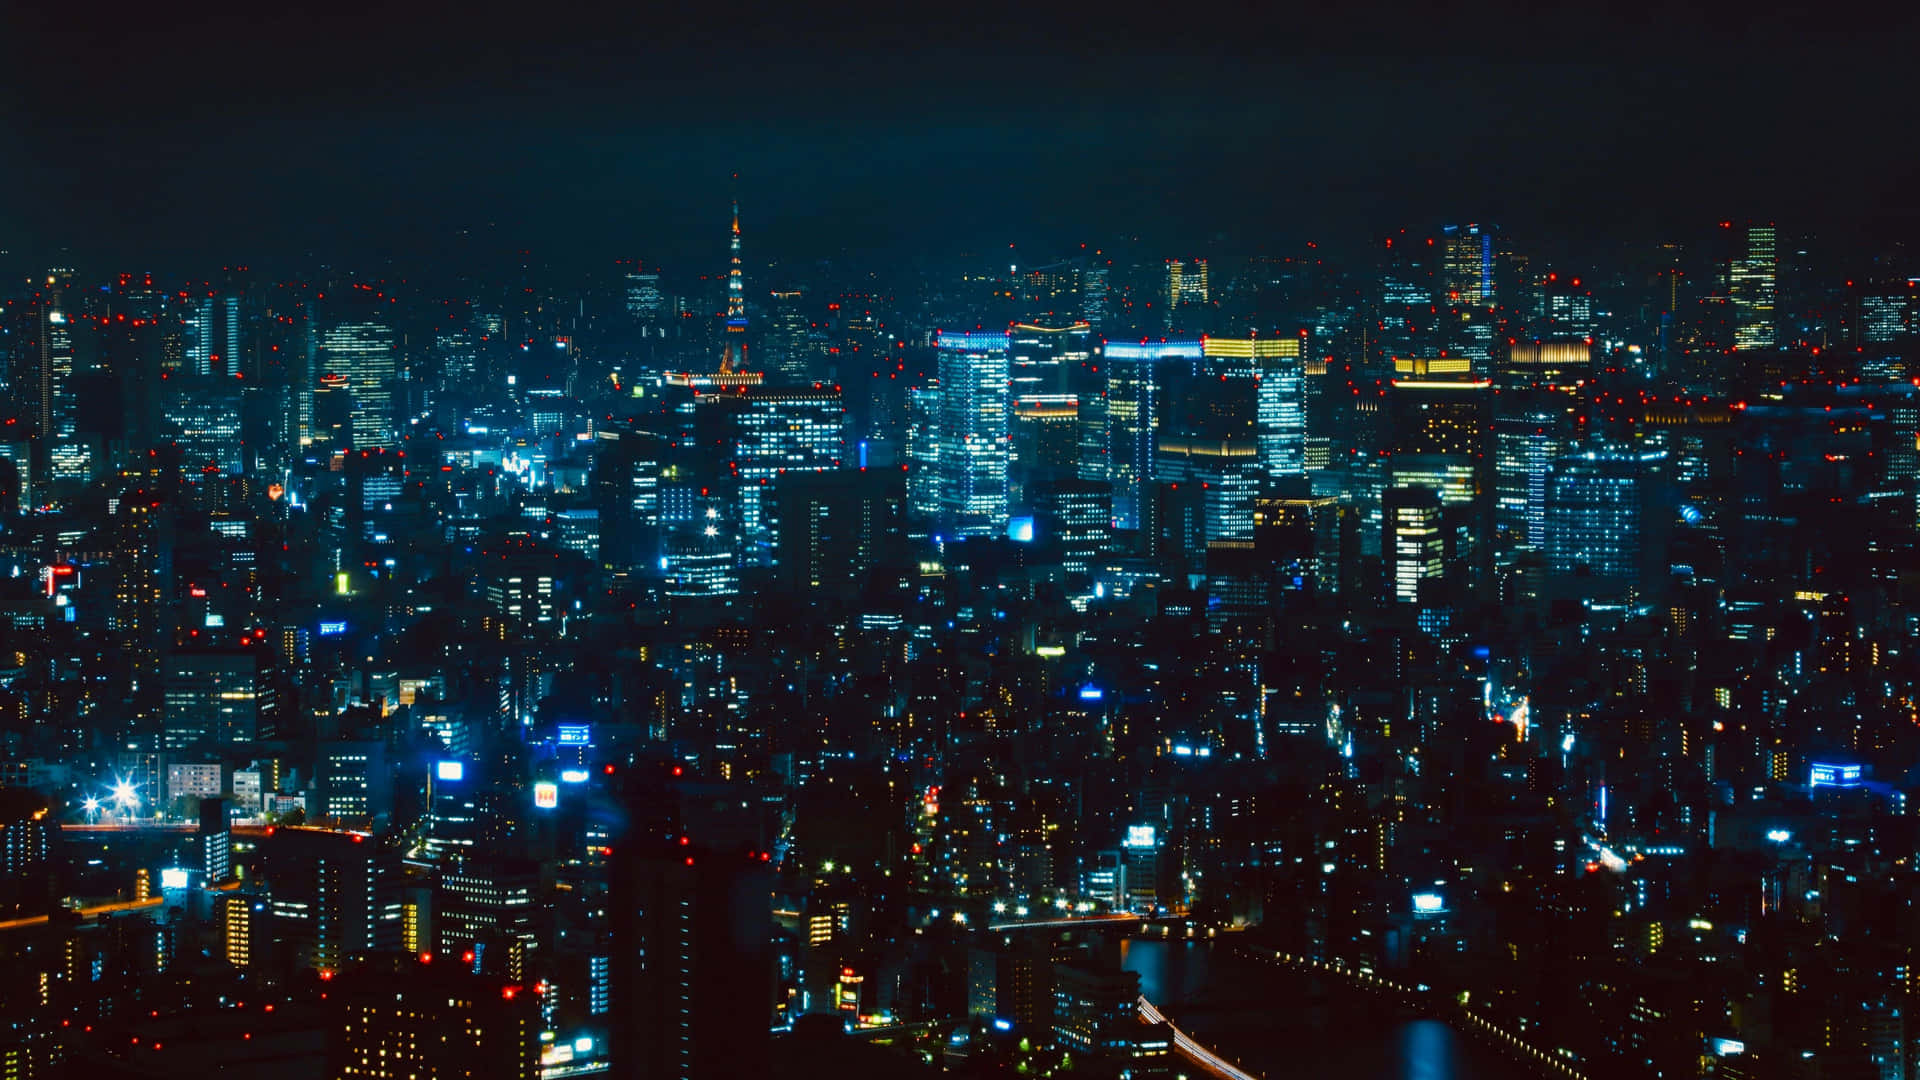 Imagensda Cidade De Tóquio À Noite.